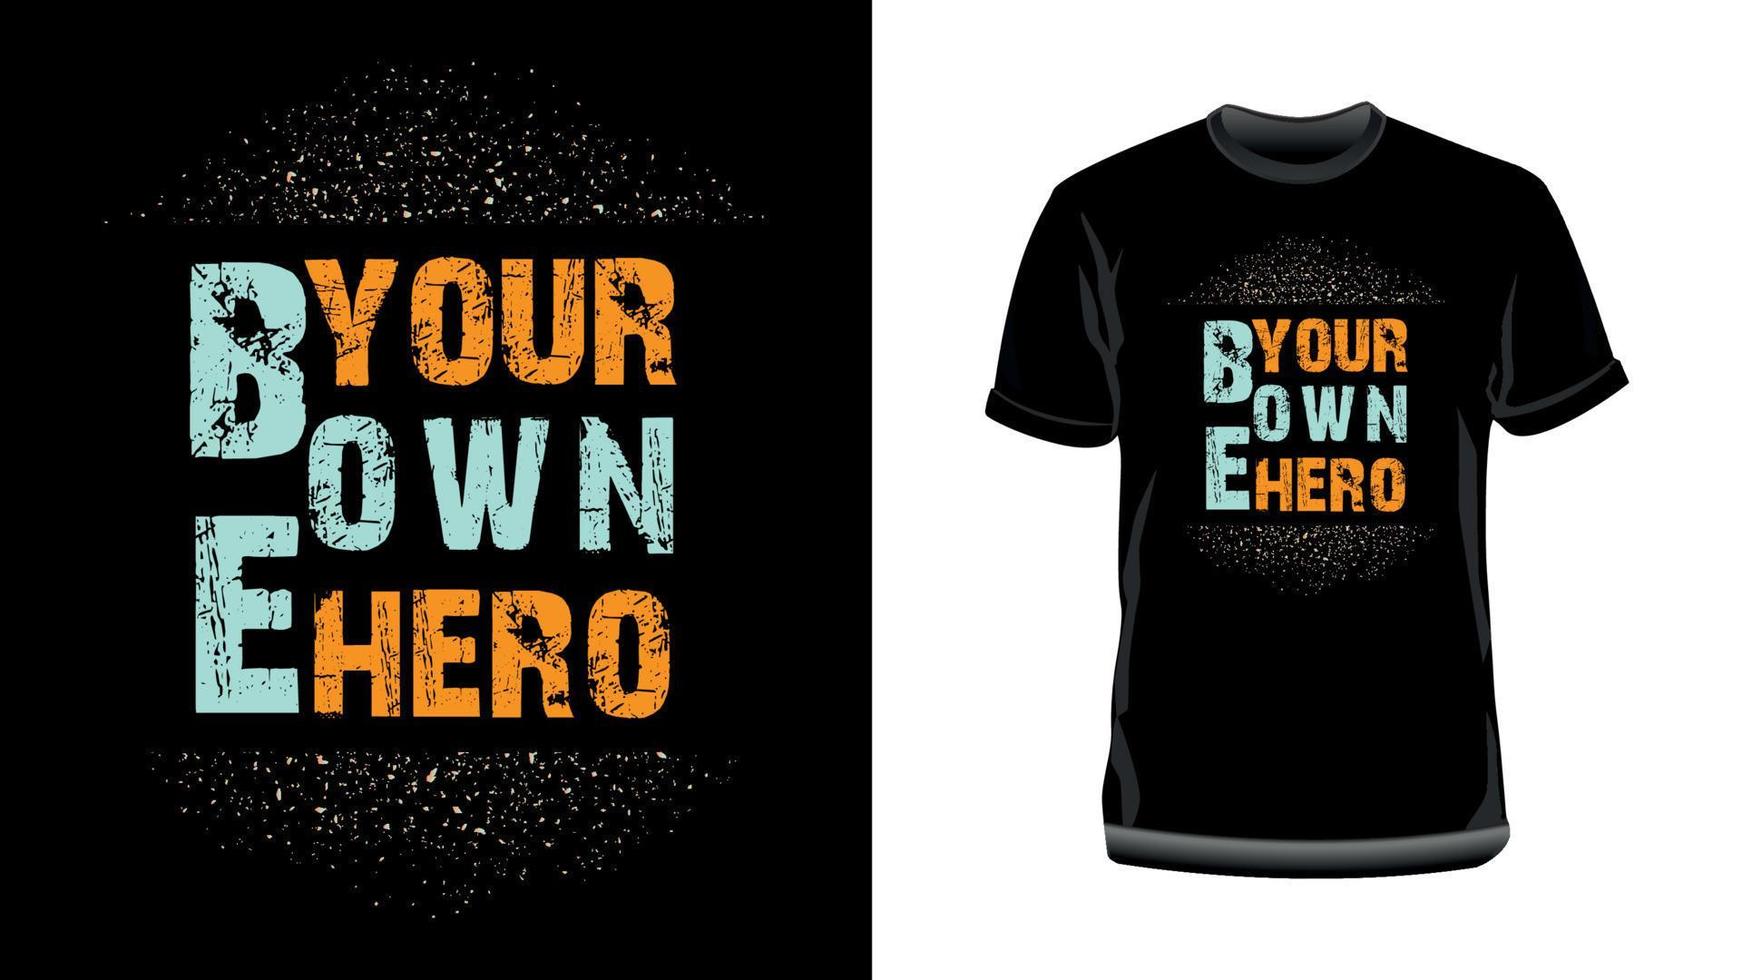 soyez votre propre héros - conception de t-shirt de typographie motivante, citations inspirantes pour t-shirt de typographie. vecteur